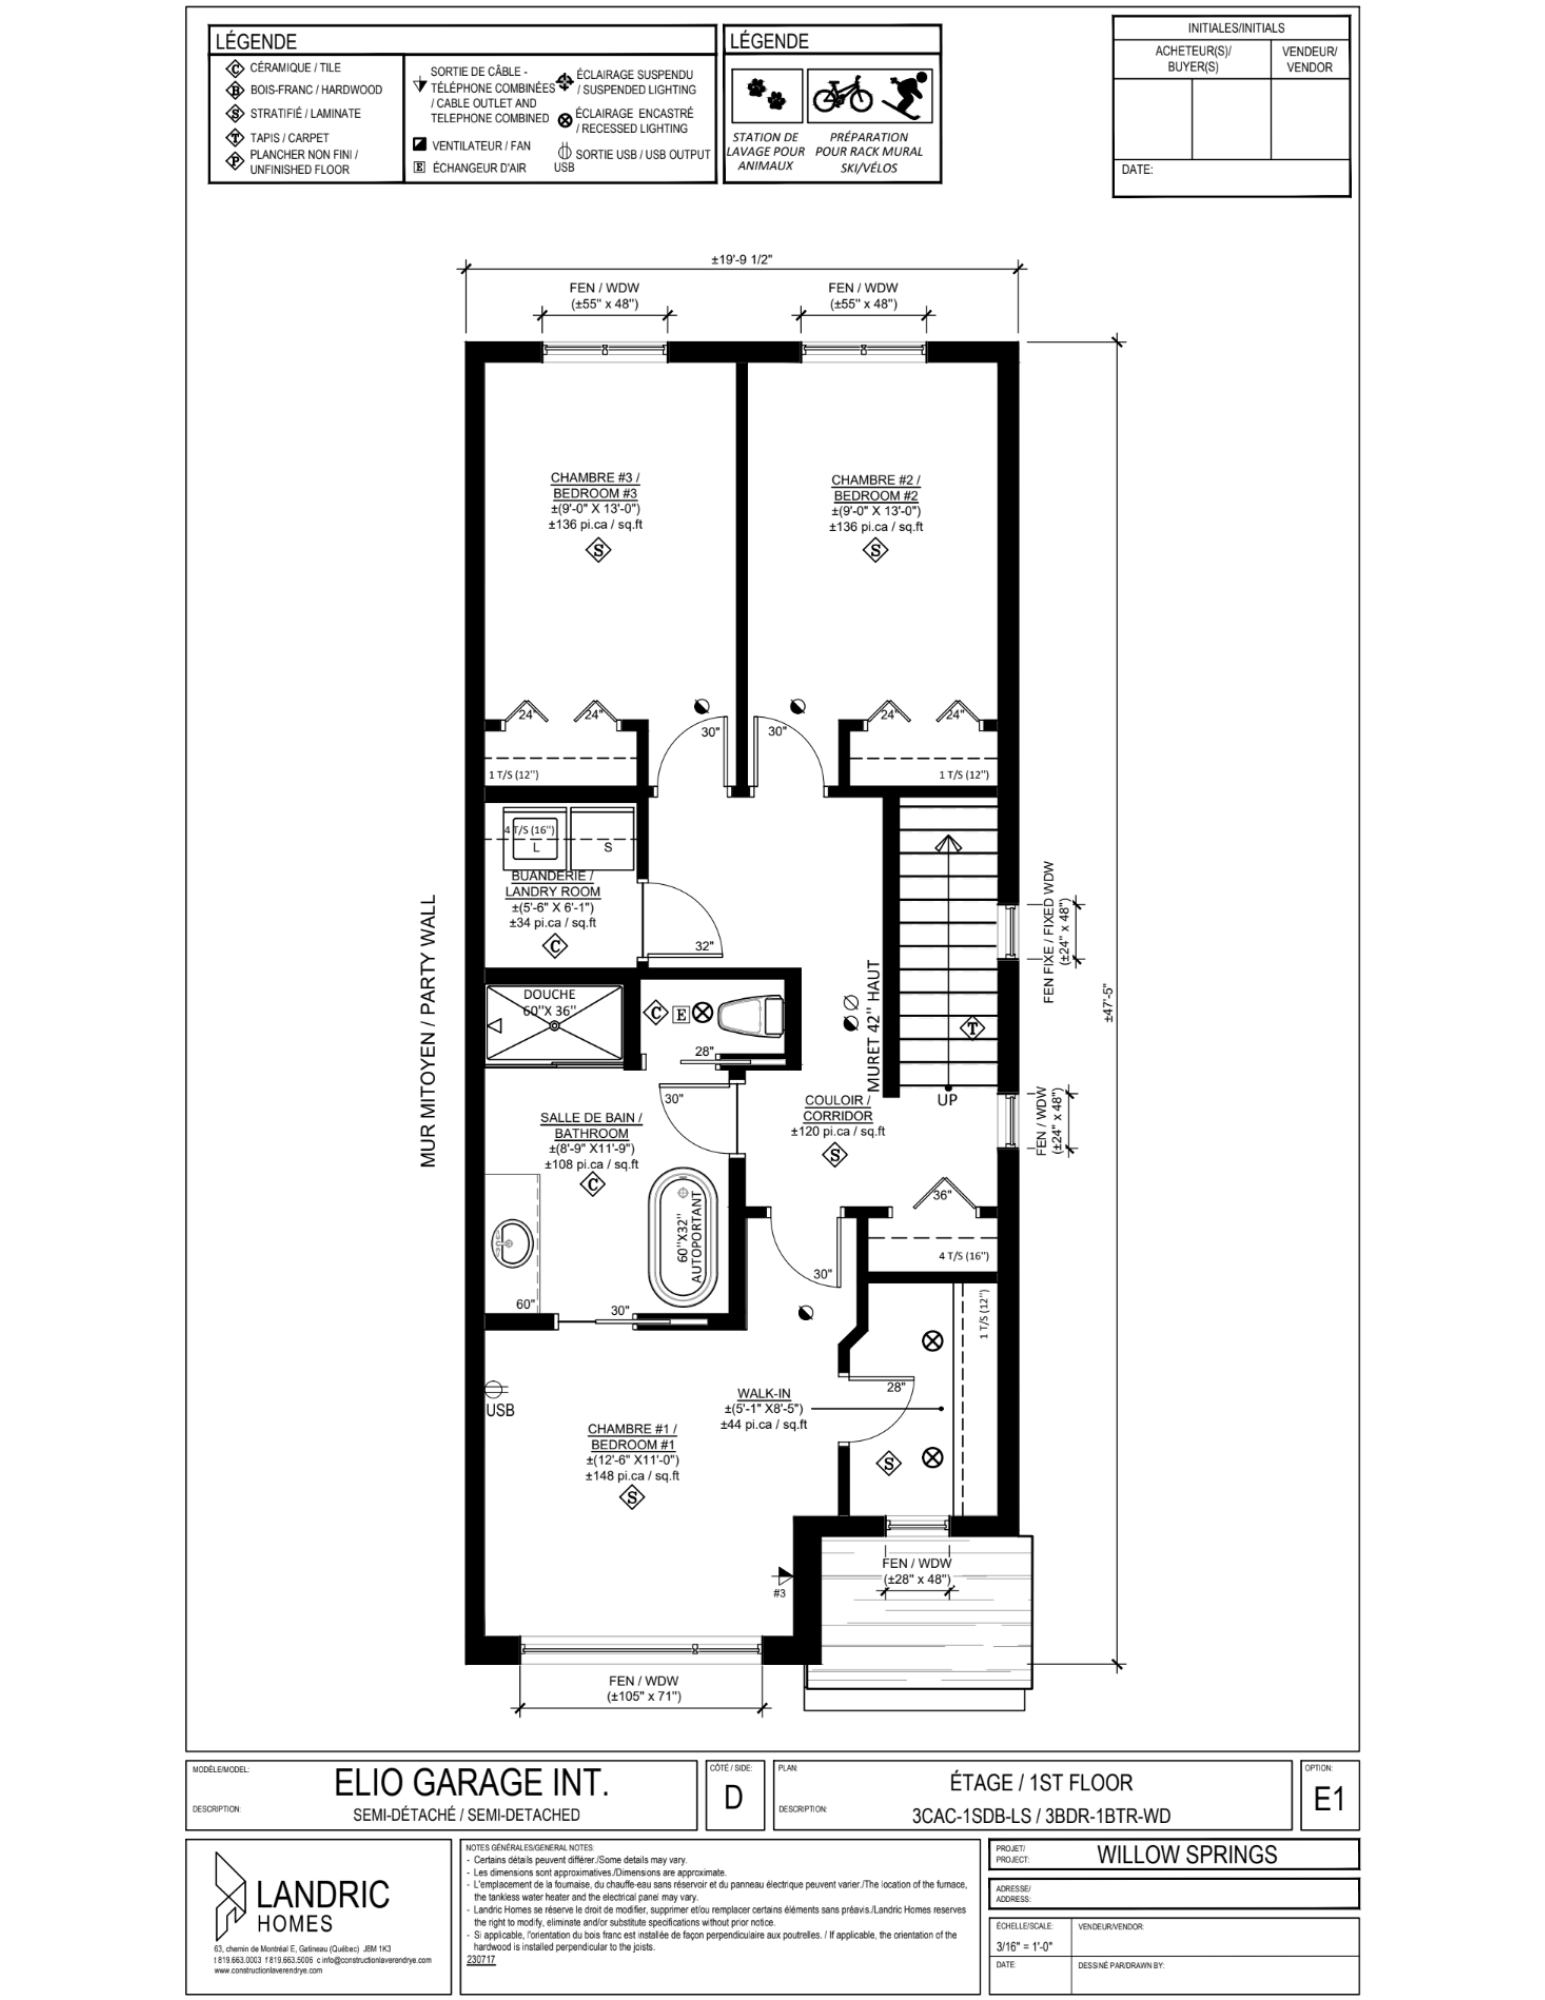 Willow Springs, Limoges floor plans (16)